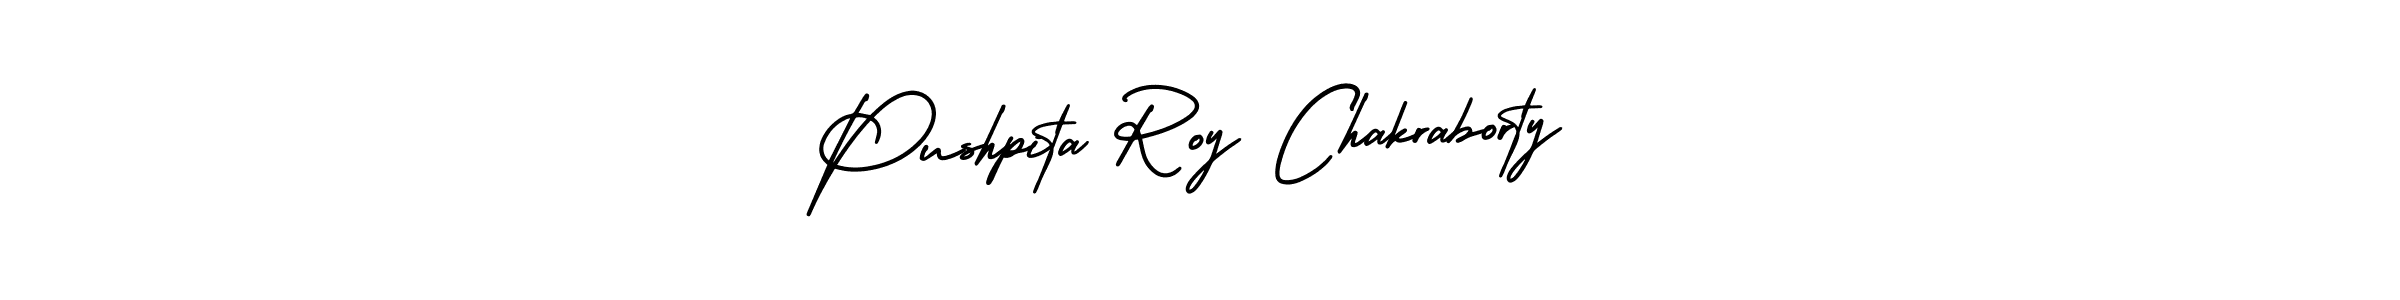 Best and Professional Signature Style for Pushpita Roy Chakraborty. AmerikaSignatureDemo-Regular Best Signature Style Collection. Pushpita Roy Chakraborty signature style 3 images and pictures png